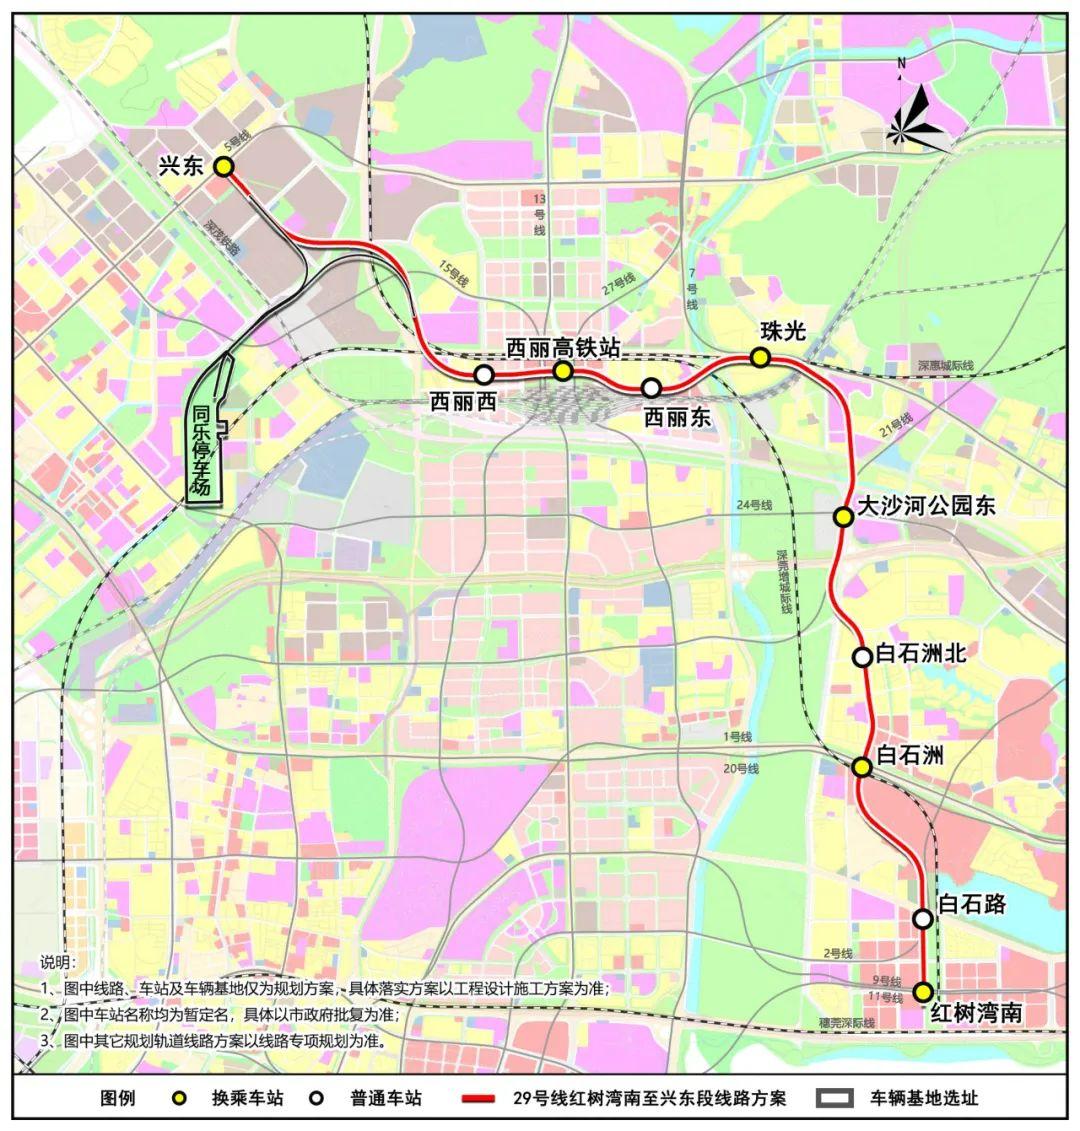 深圳又有5条轨道传来好消息!地铁17号线一期正式开工!